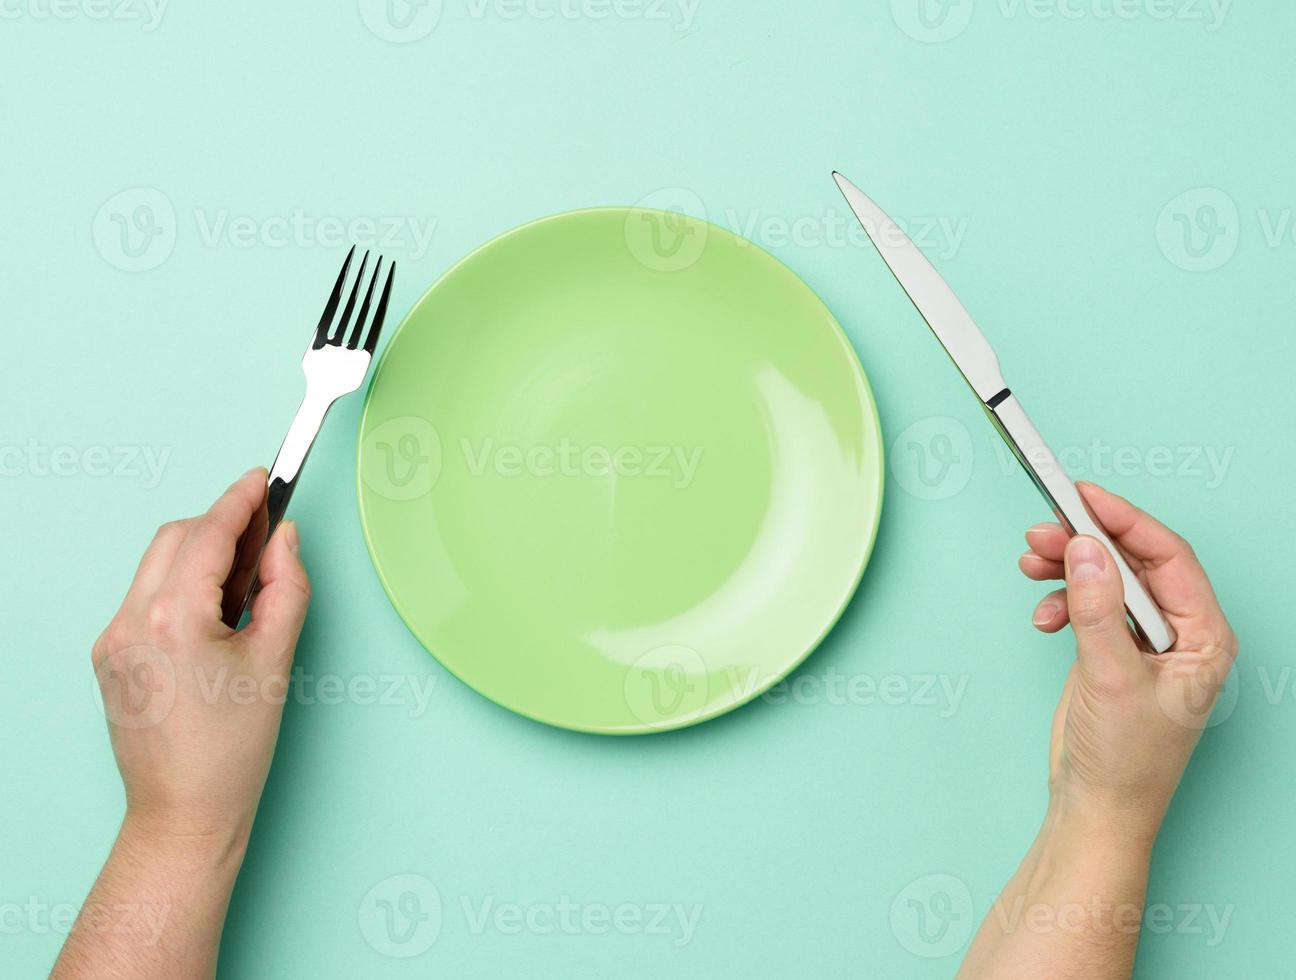 twee handen houden een metaal mes en vork Aan de oppervlakte van een ronde leeg groen bord foto